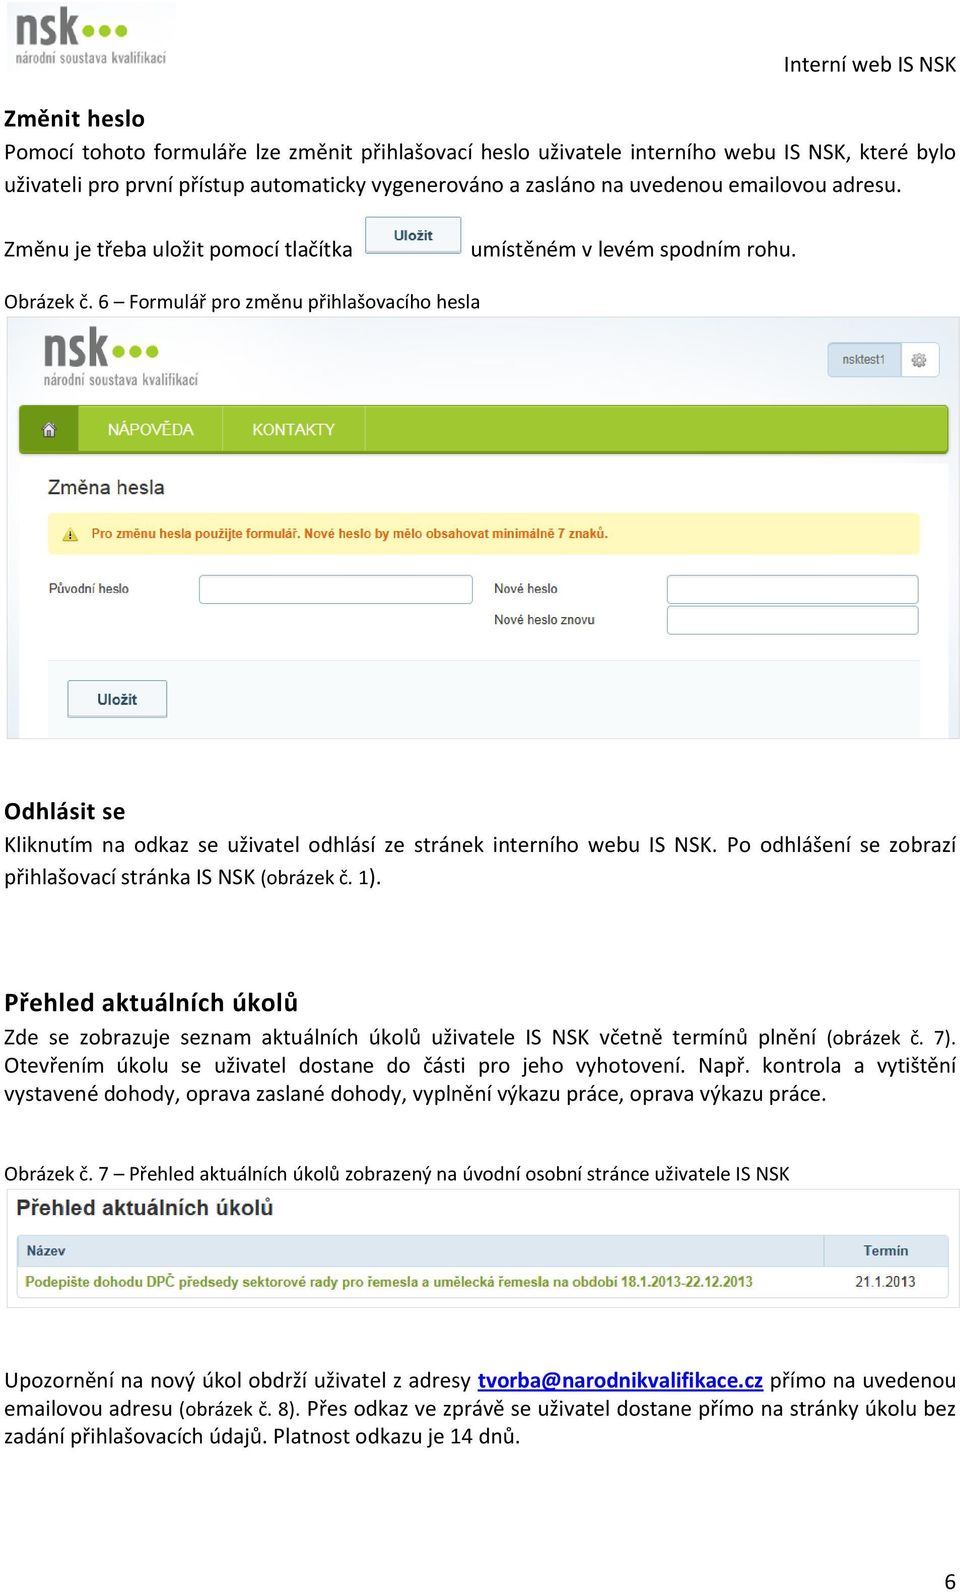 6 Formulář pro změnu přihlašovacího hesla Odhlásit se Kliknutím na odkaz se uživatel odhlásí ze stránek interního webu IS NSK. Po odhlášení se zobrazí přihlašovací stránka IS NSK (obrázek č. 1).